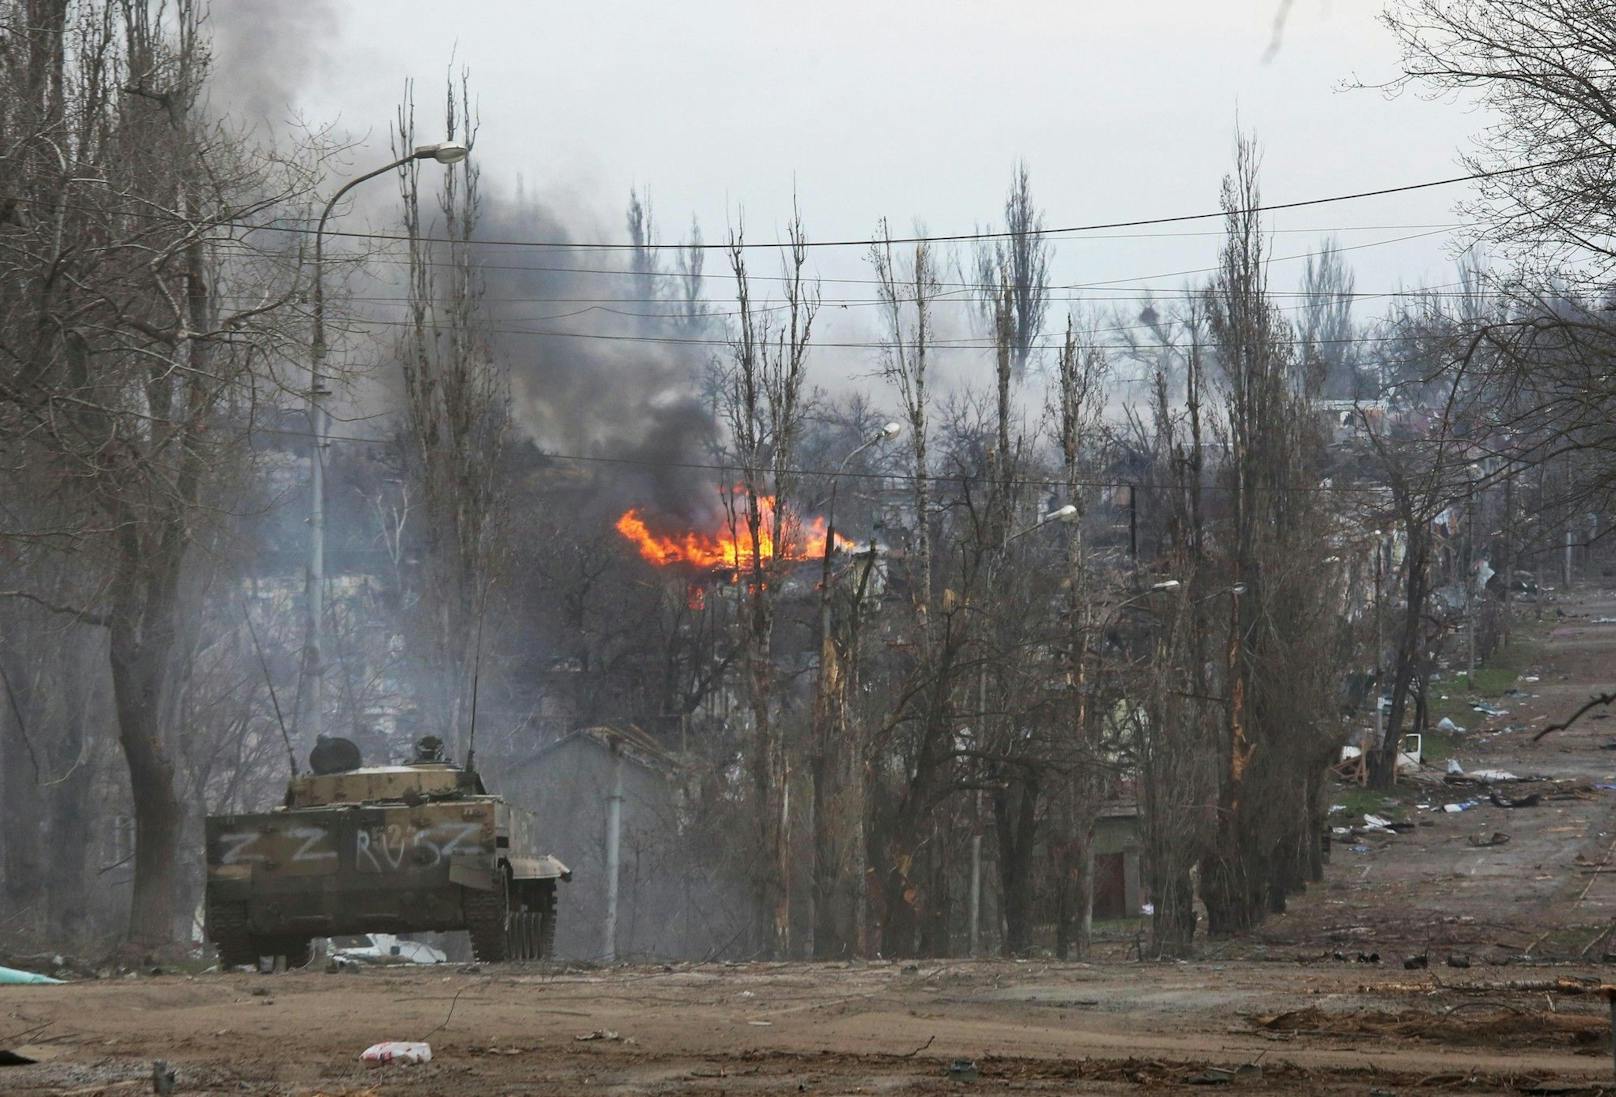 Laut dem ukrainischen Asow-Regiment soll die russische Armee in Mariupol Giftgas eingesetzt haben. Die Berichte sind allerdings noch nicht offiziell bestätigt.